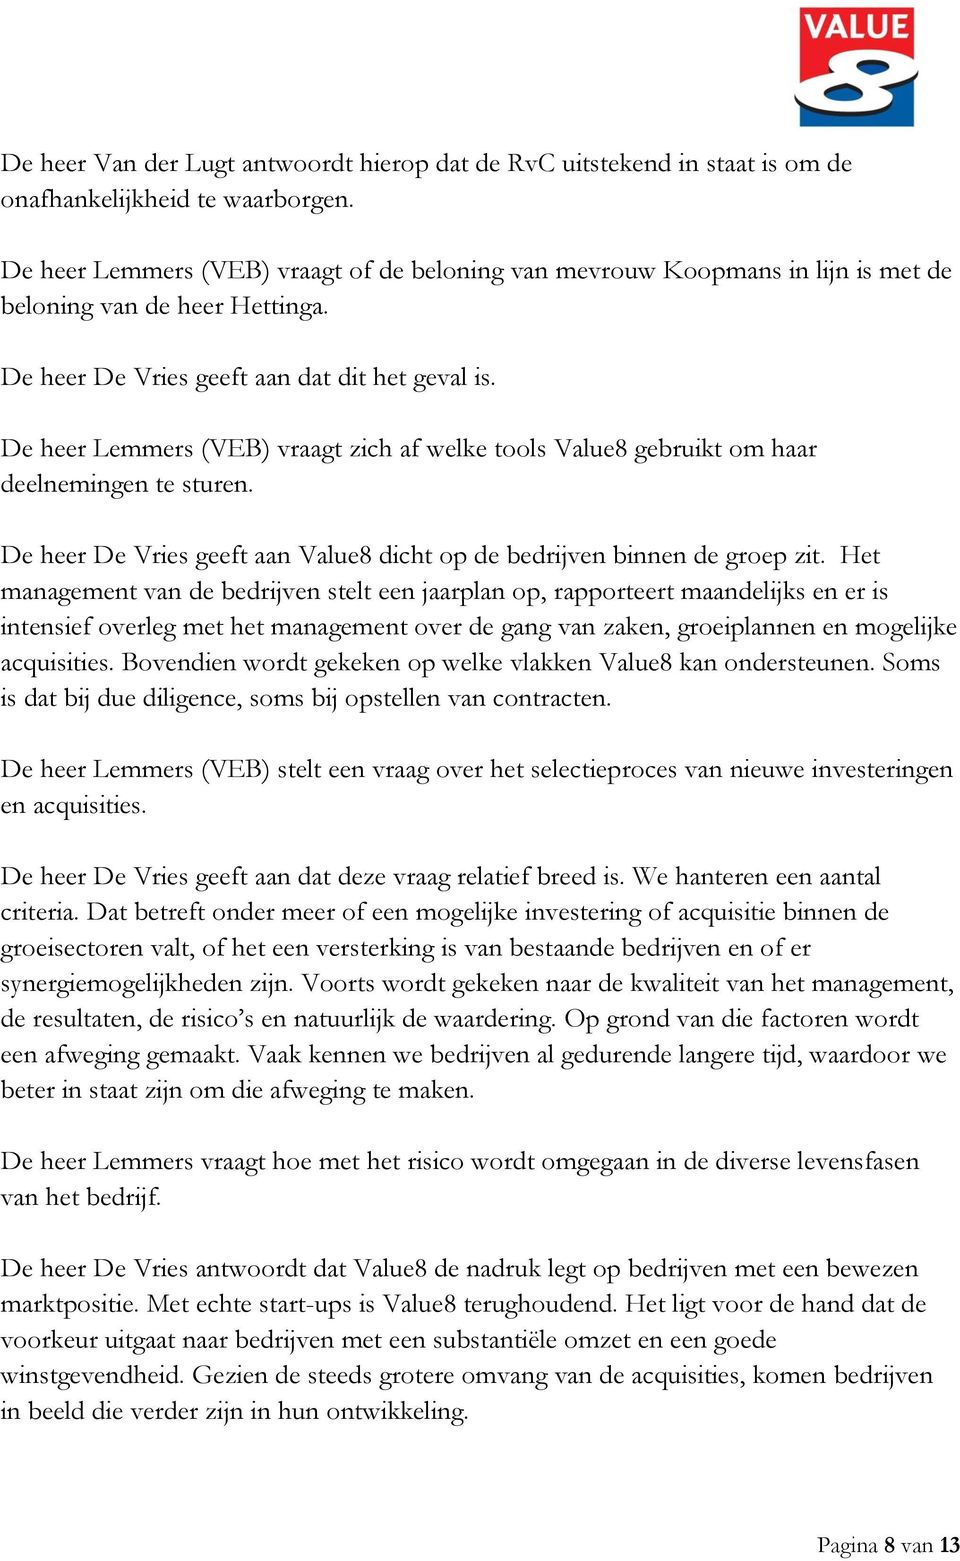 De heer Lemmers (VEB) vraagt zich af welke tools Value8 gebruikt om haar deelnemingen te sturen. De heer De Vries geeft aan Value8 dicht op de bedrijven binnen de groep zit.